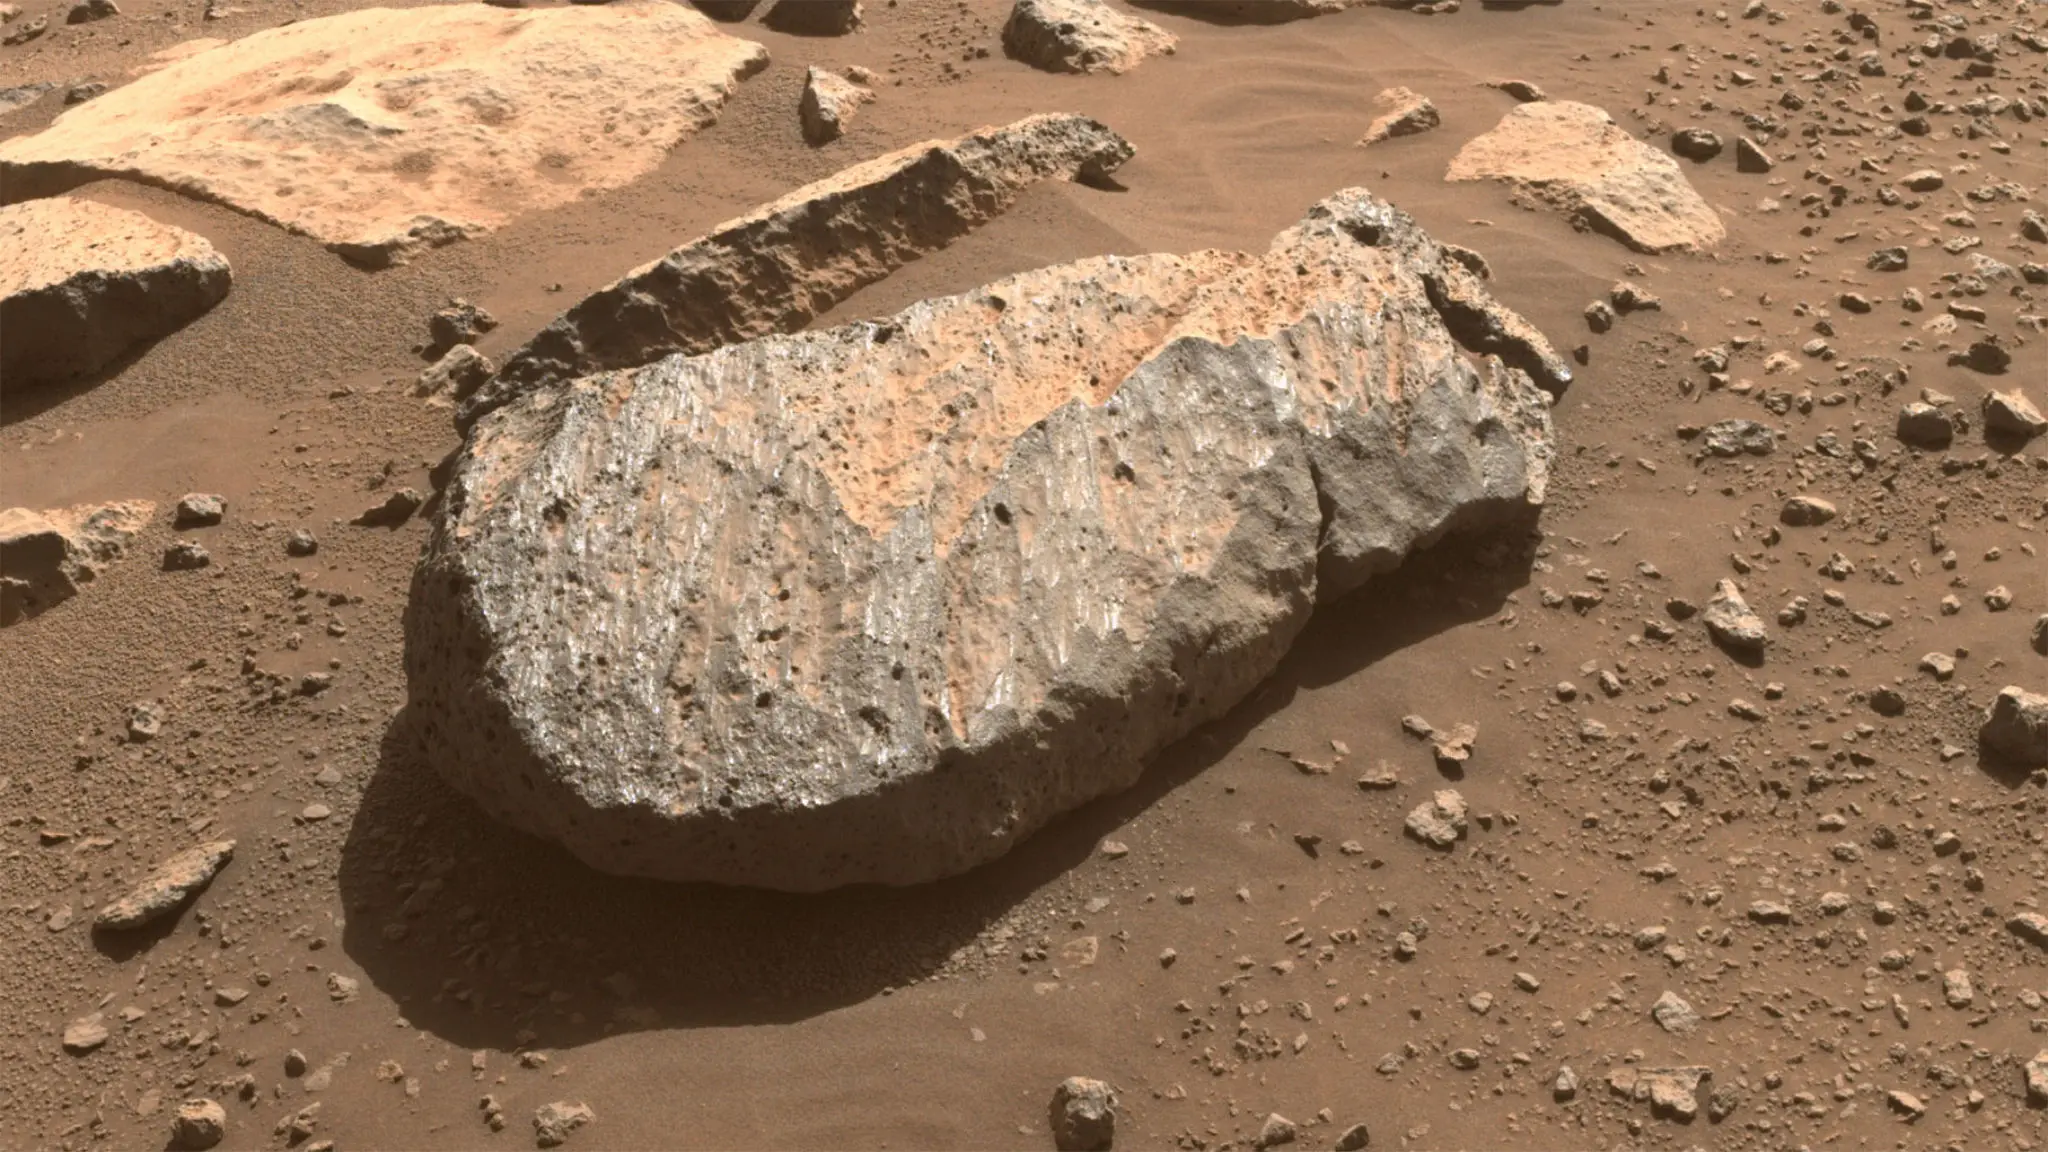 Perseverance chuẩn bị khoan đá lần 2 trên Sao Hỏa, kỳ này kỹ lưỡng hơn